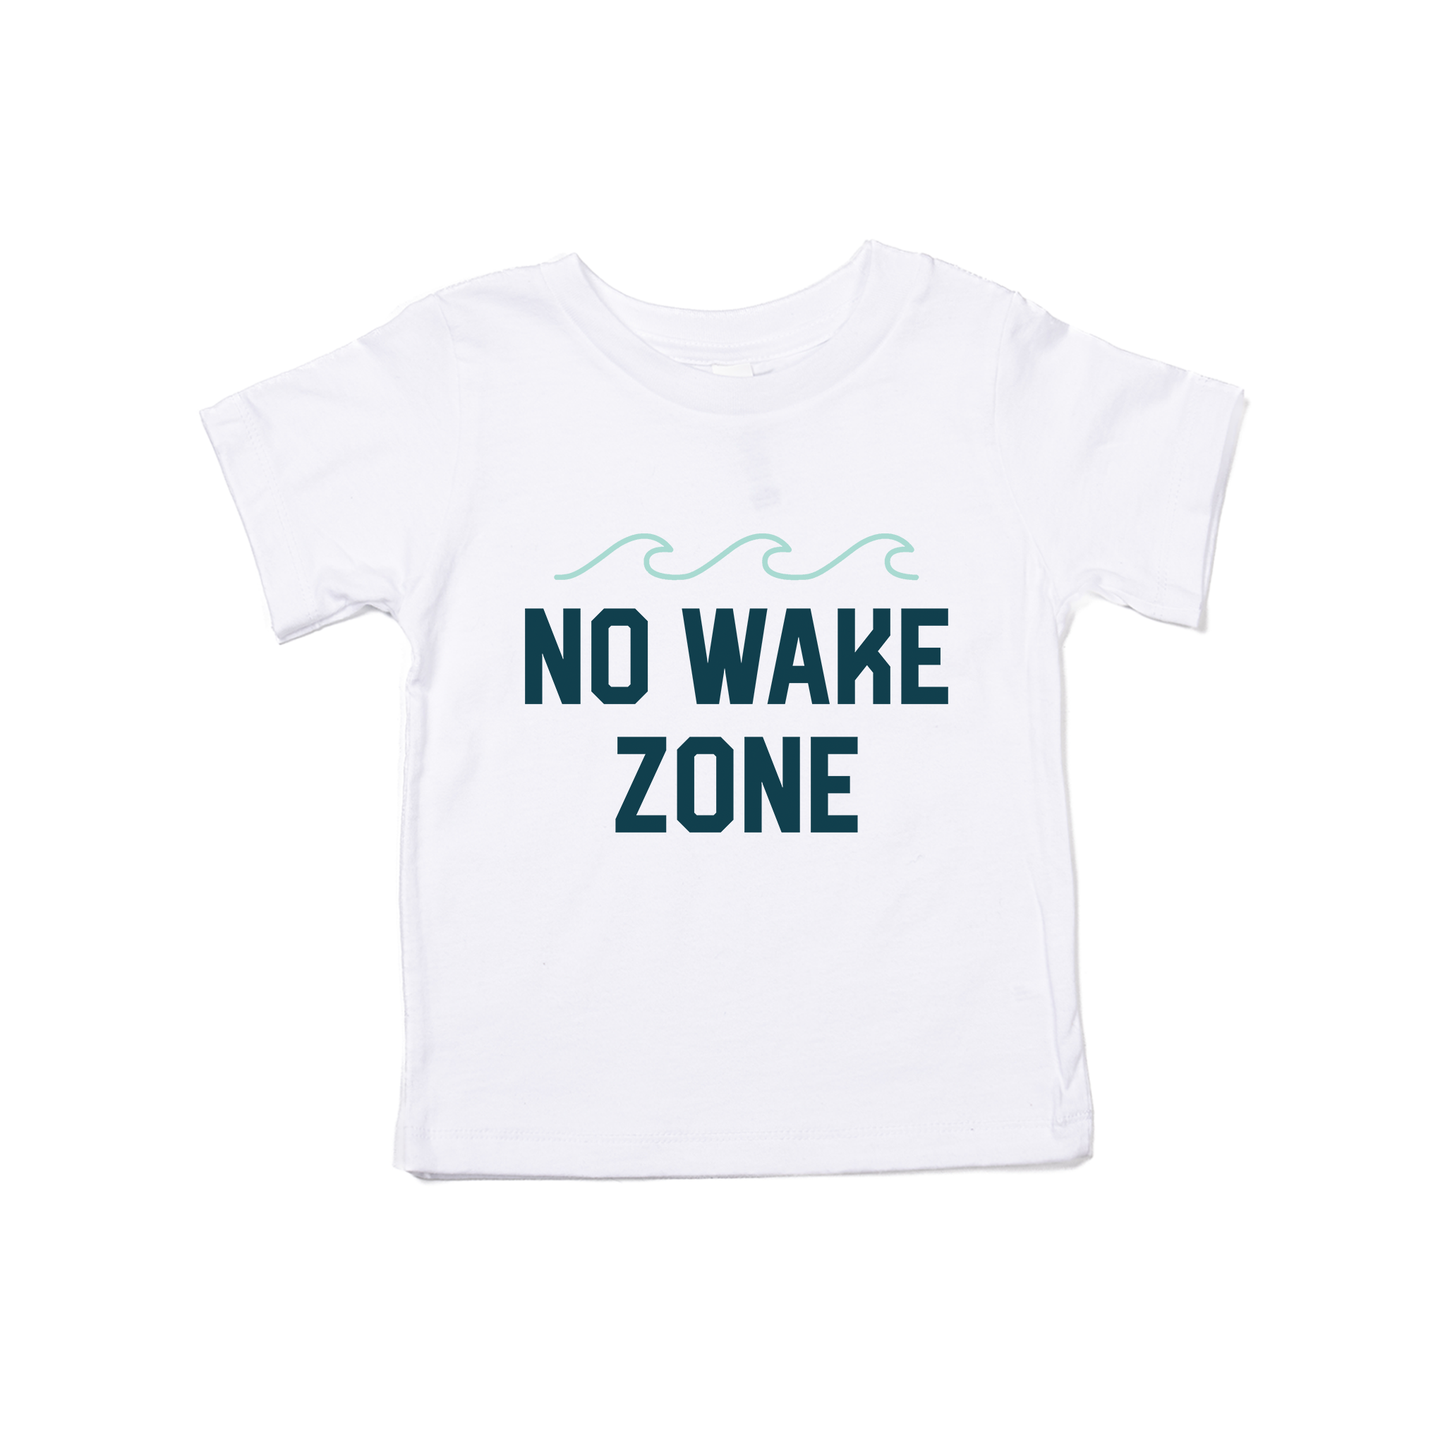 No Wake Zone - Kids Tee (White)